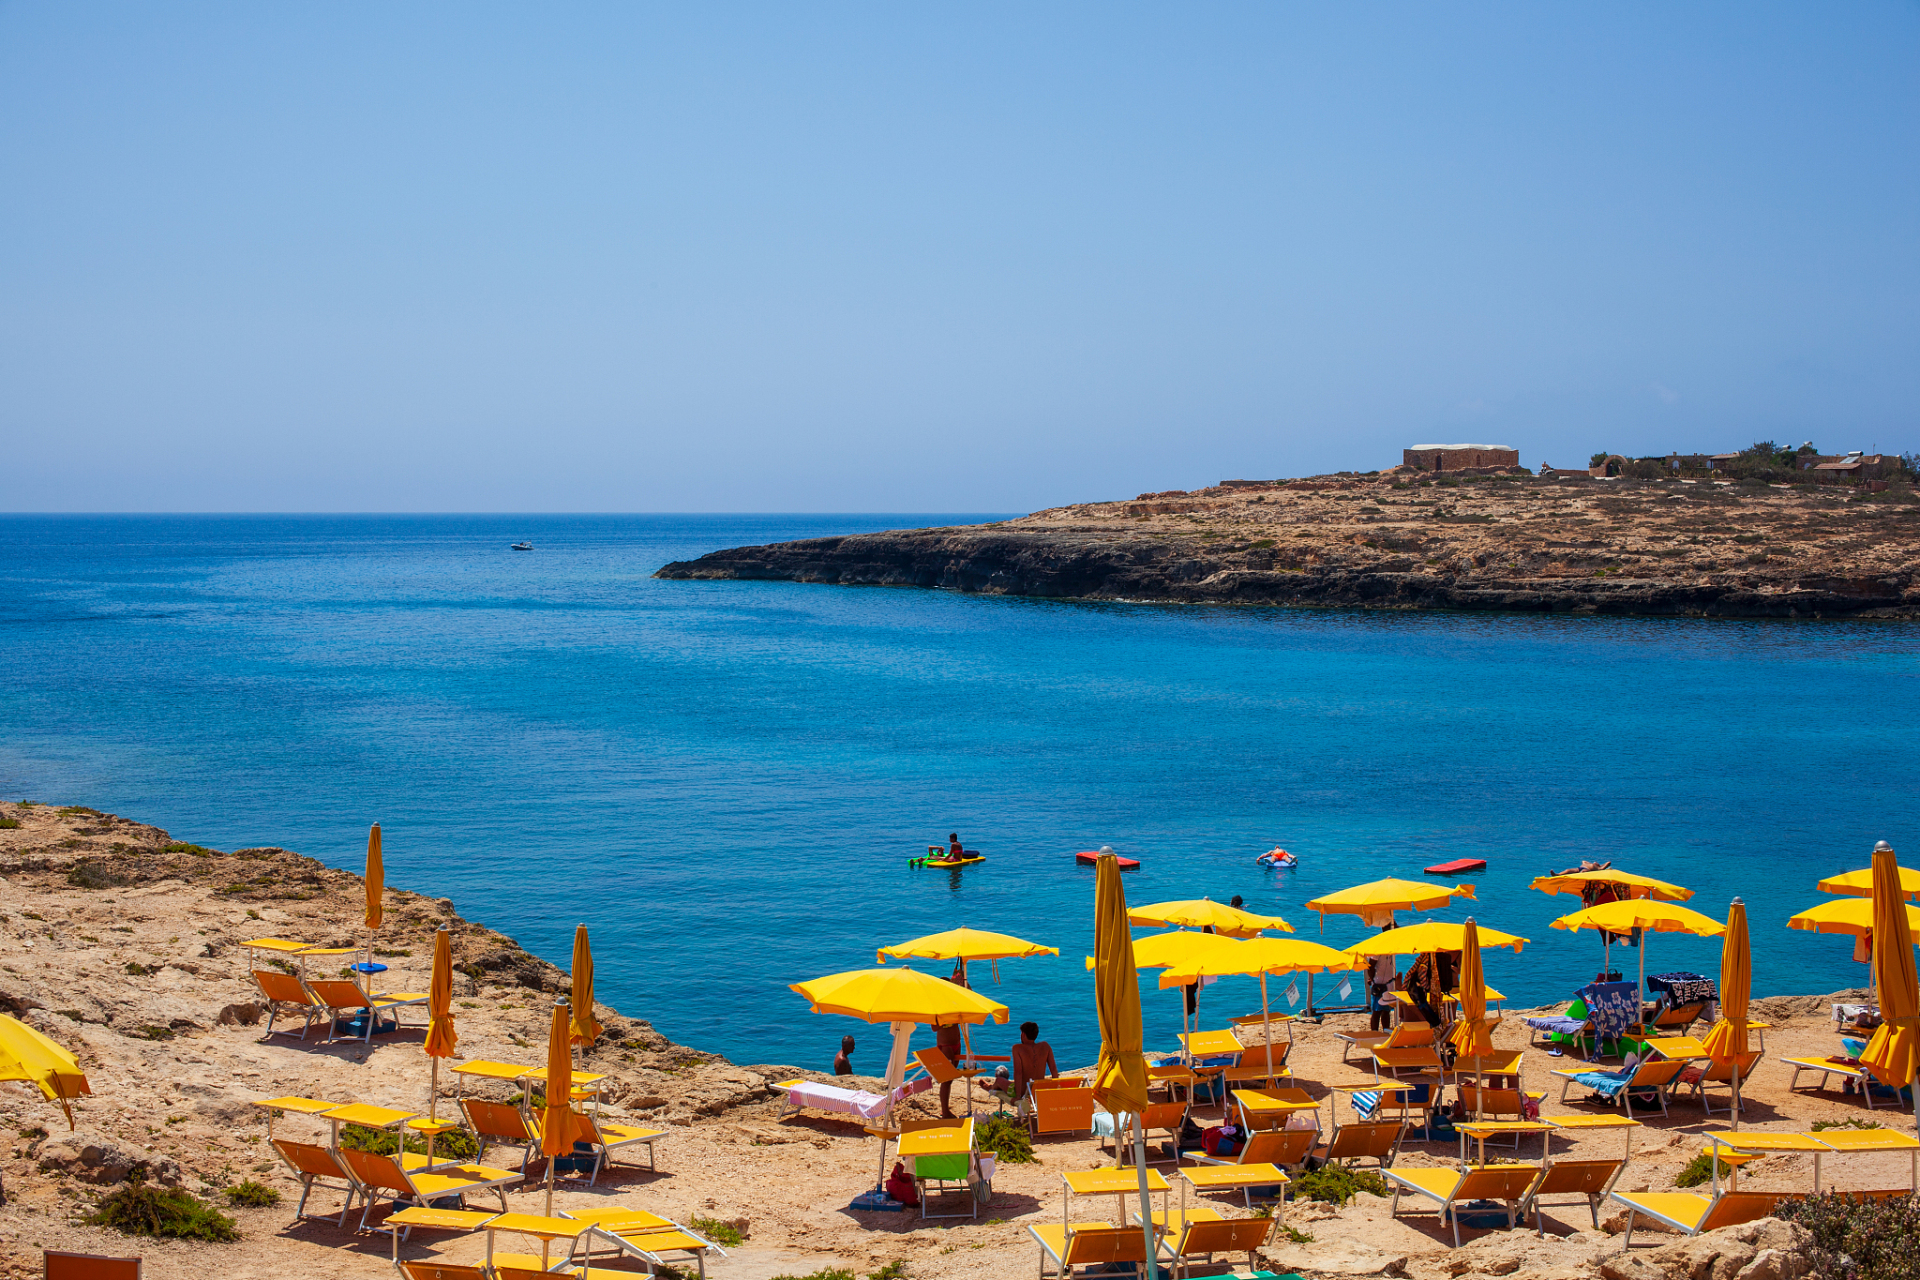 以阳光沙滩著称的西班牙太阳海岸2006年接待了900多万游客,成为欧洲